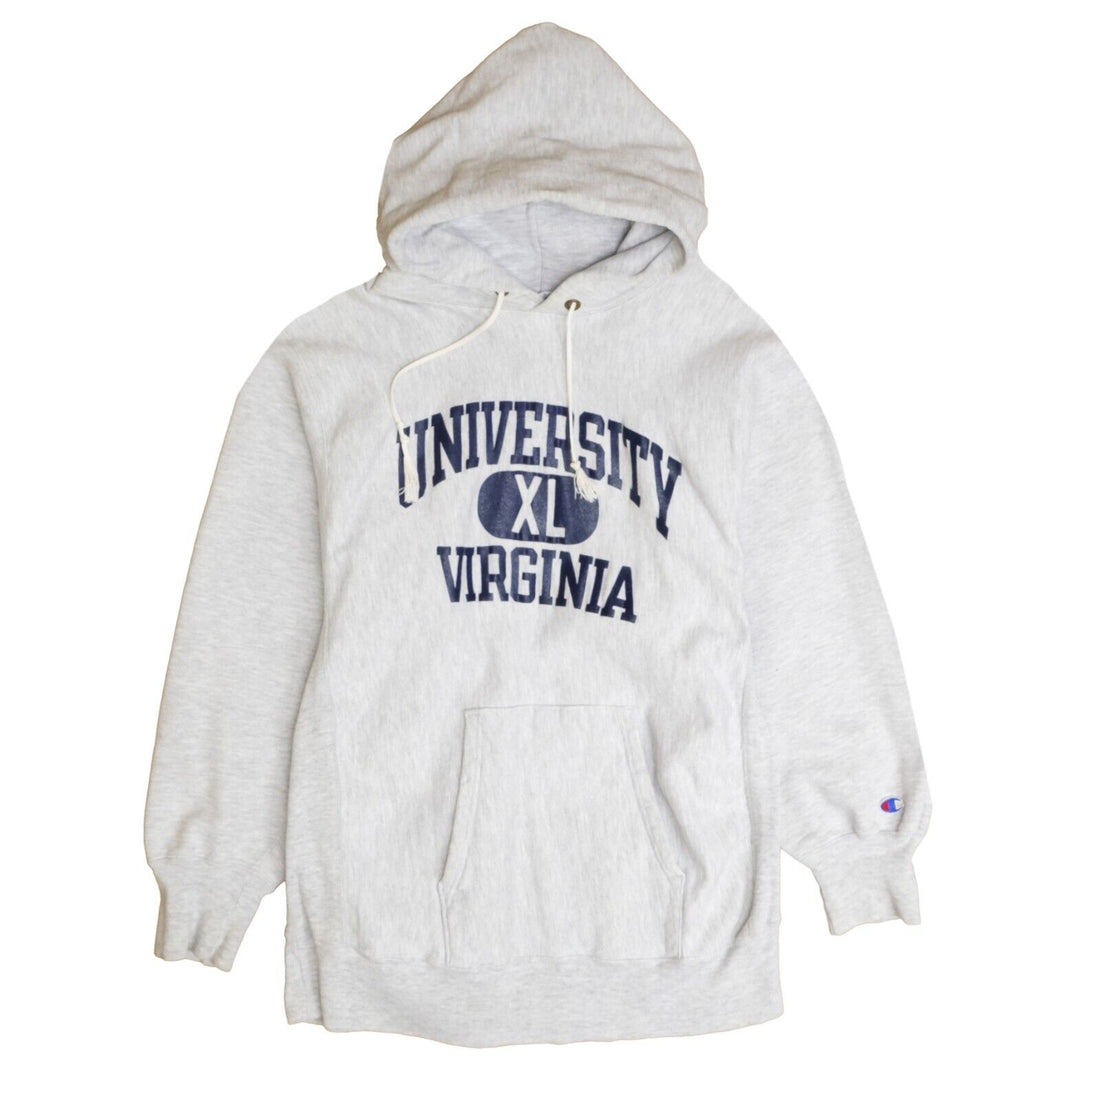 Vintage University Virginia Champion Reverse Weave Sweatshirt Hoodie Large 80s